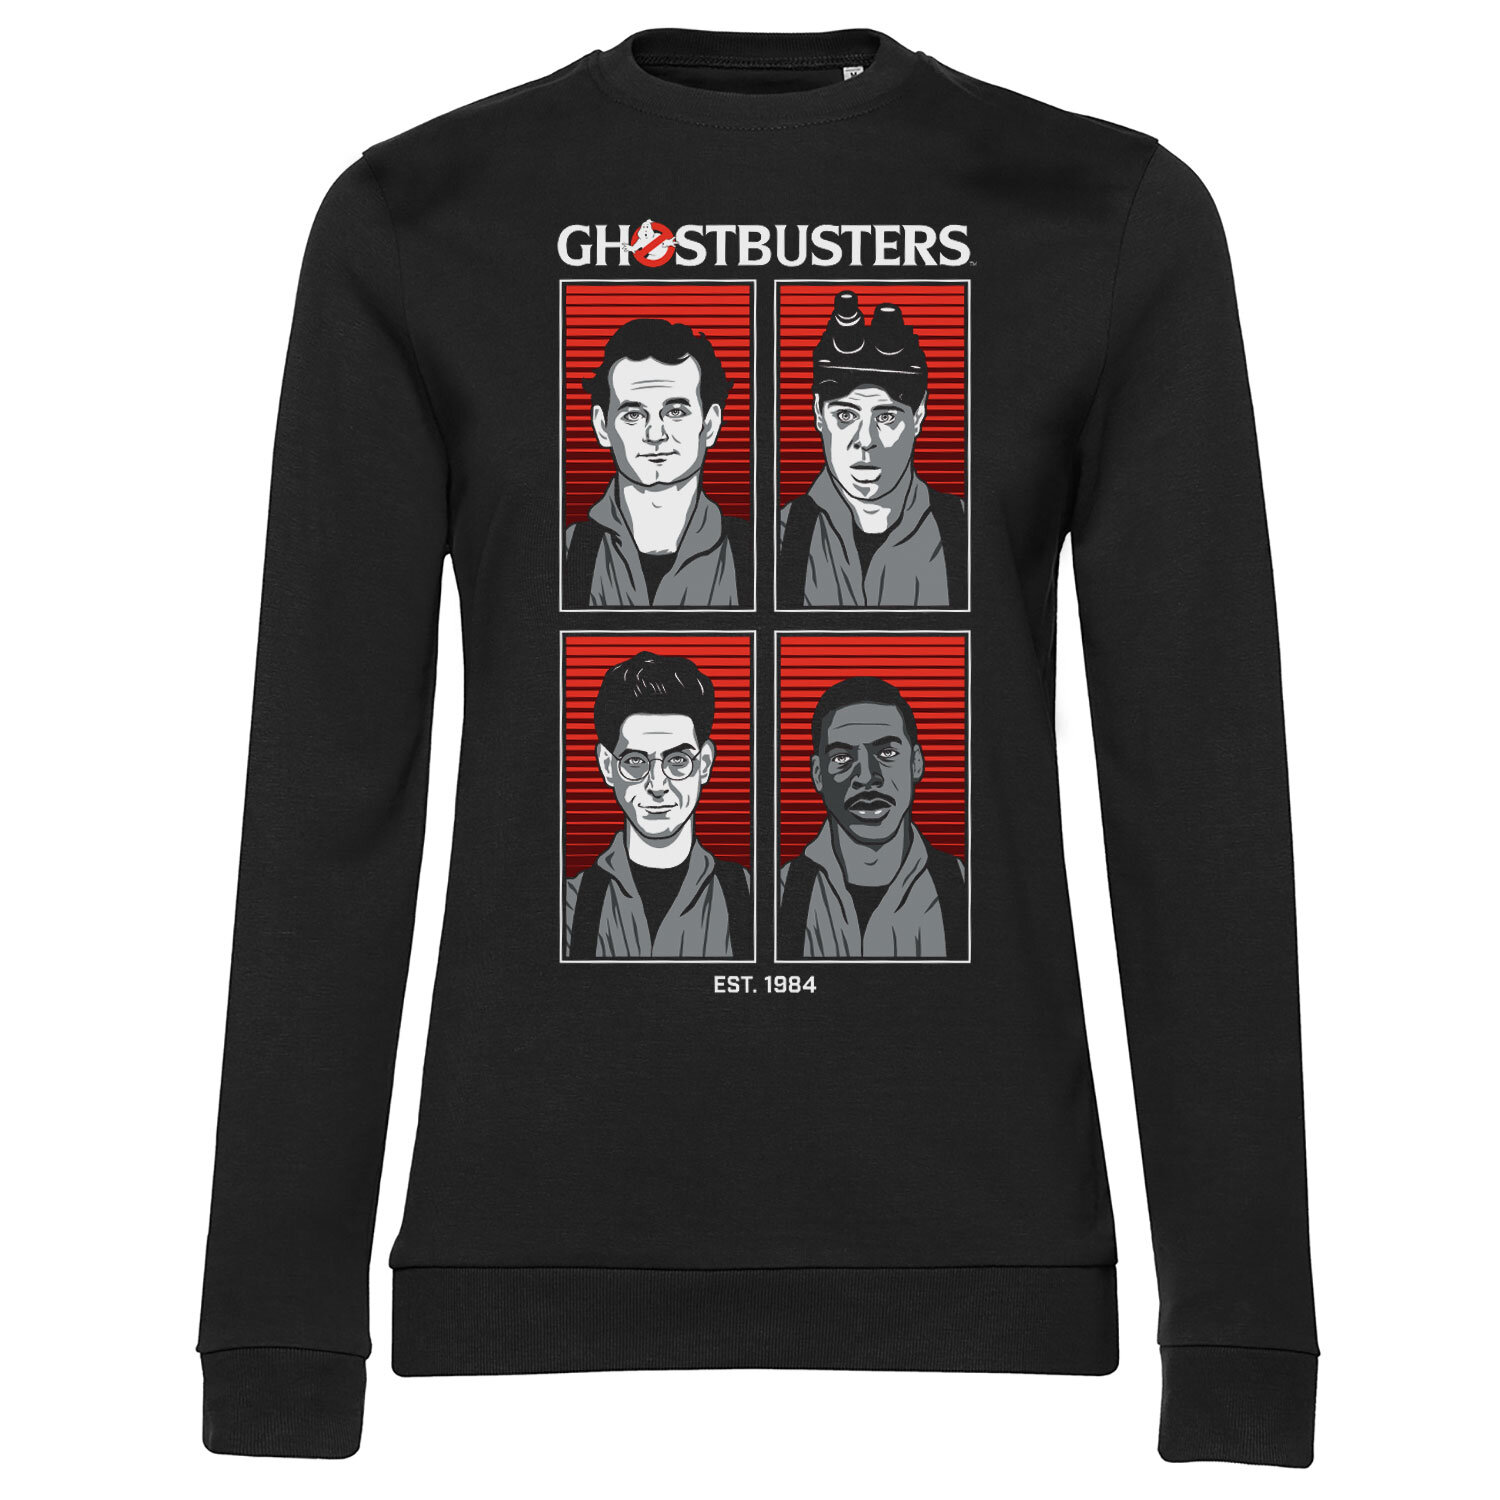 Ghostbusters Original Team Girly Sweatshirt